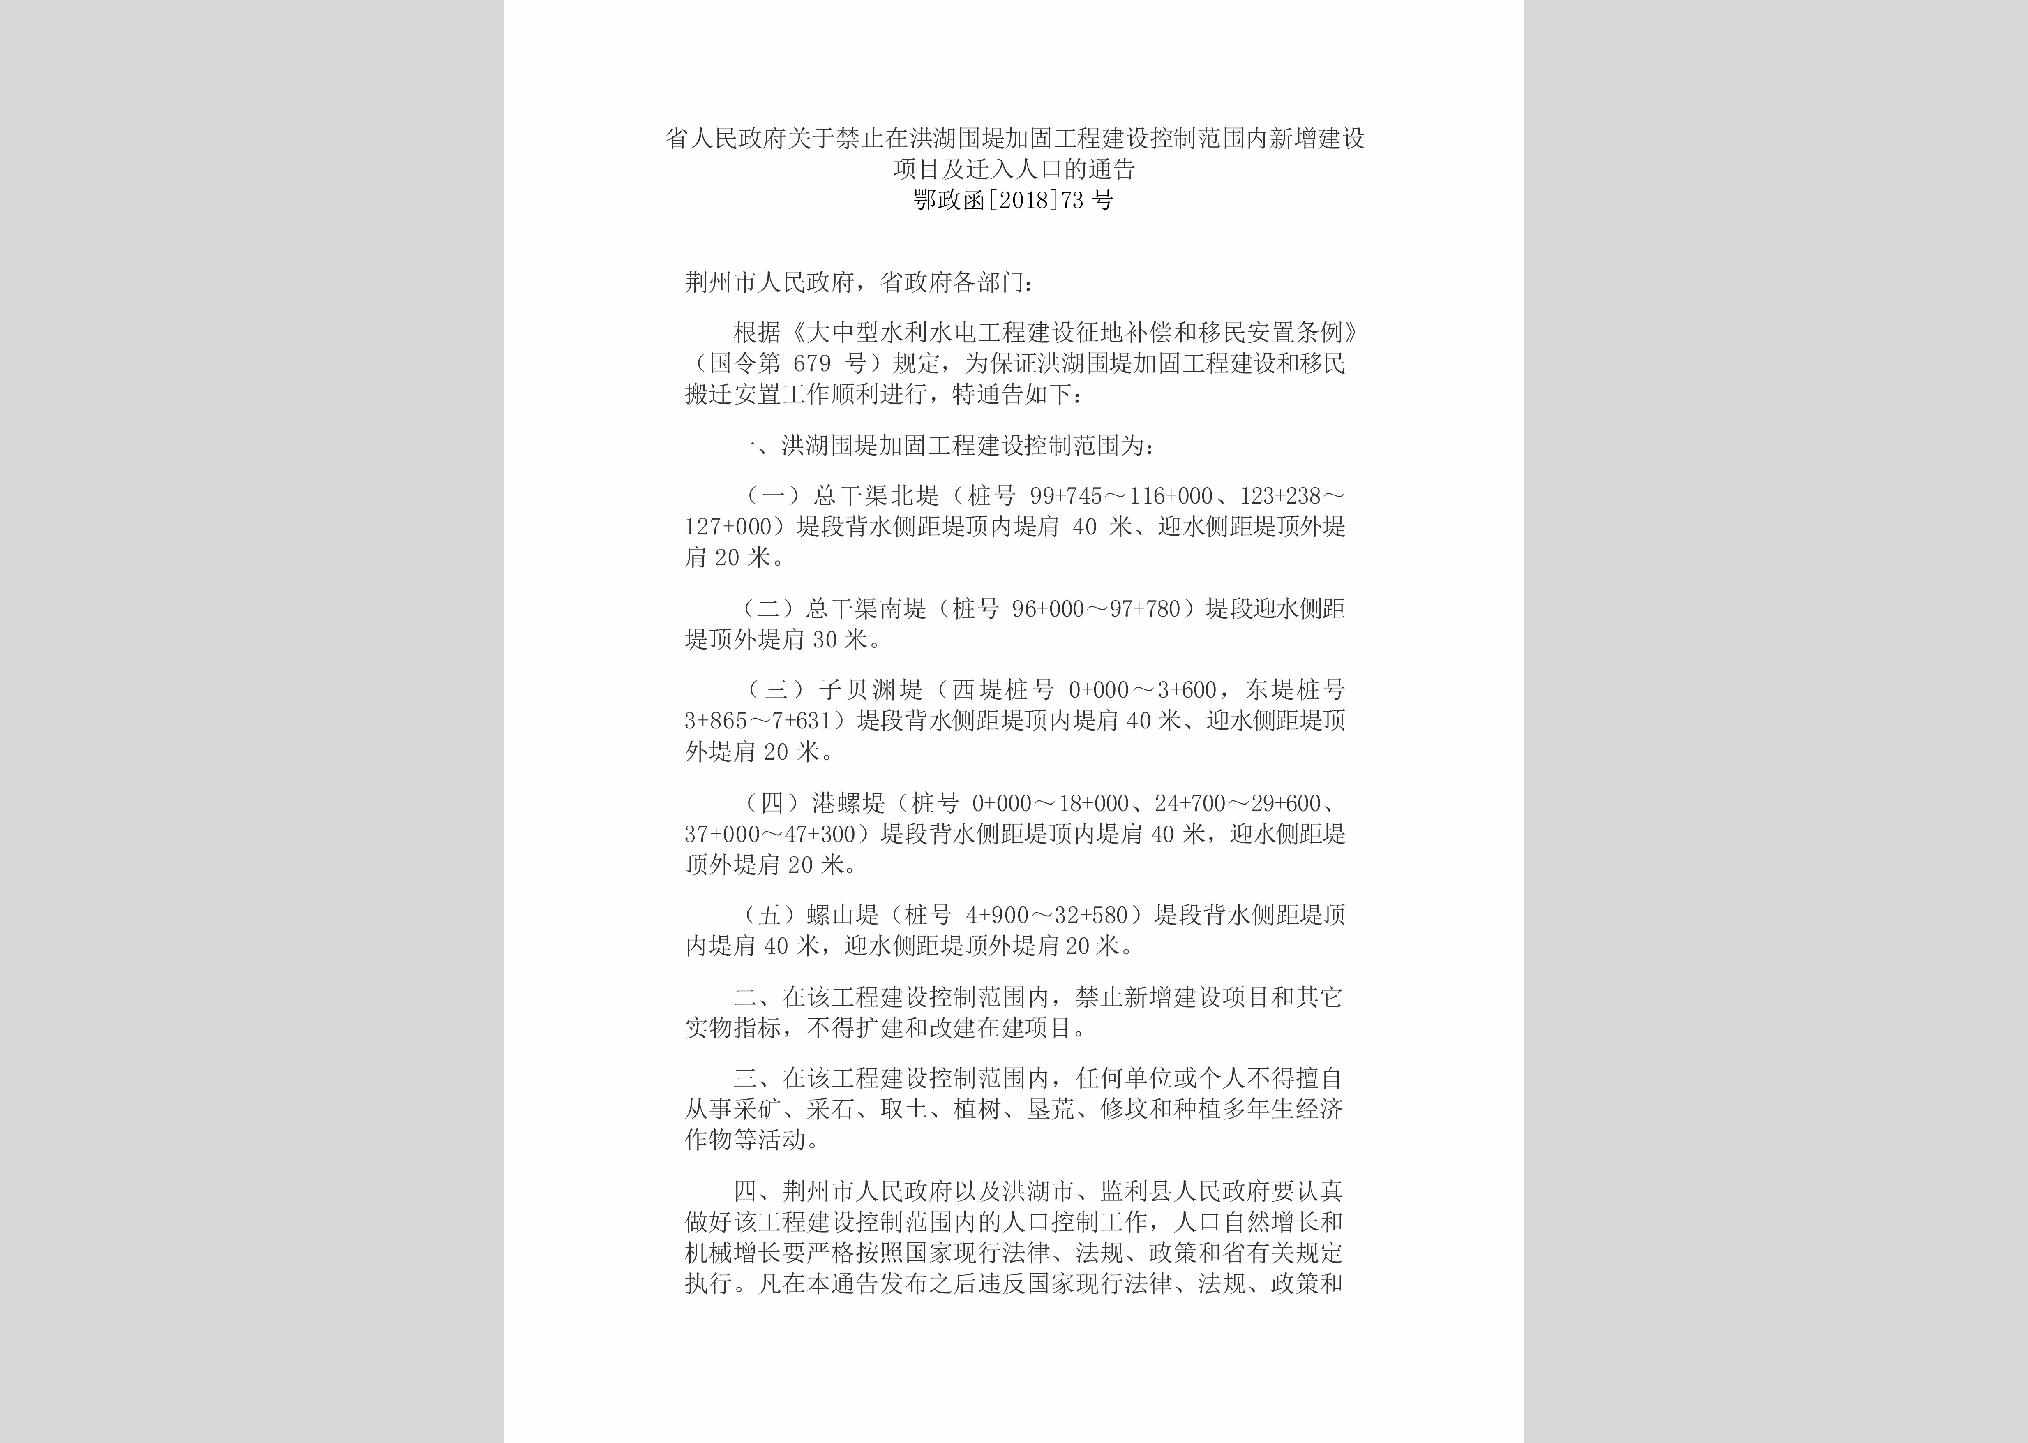 鄂政函[2018]73号：省人民政府关于禁止在洪湖围堤加固工程建设控制范围内新增建设项目及迁入人口的通告